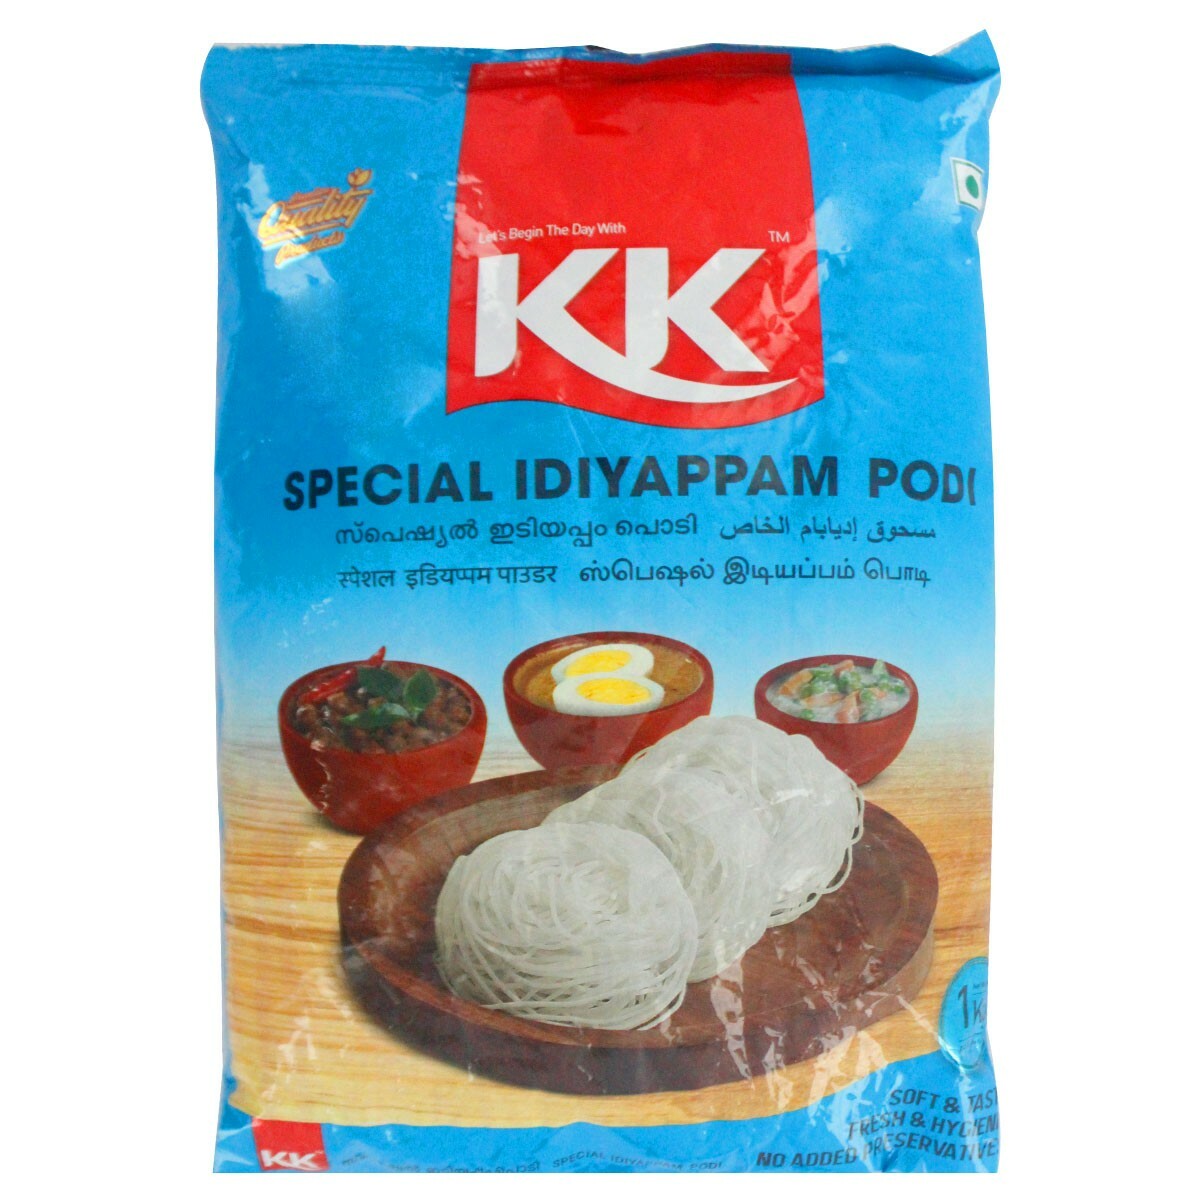 KK Special Idiyappam Podi 1kg